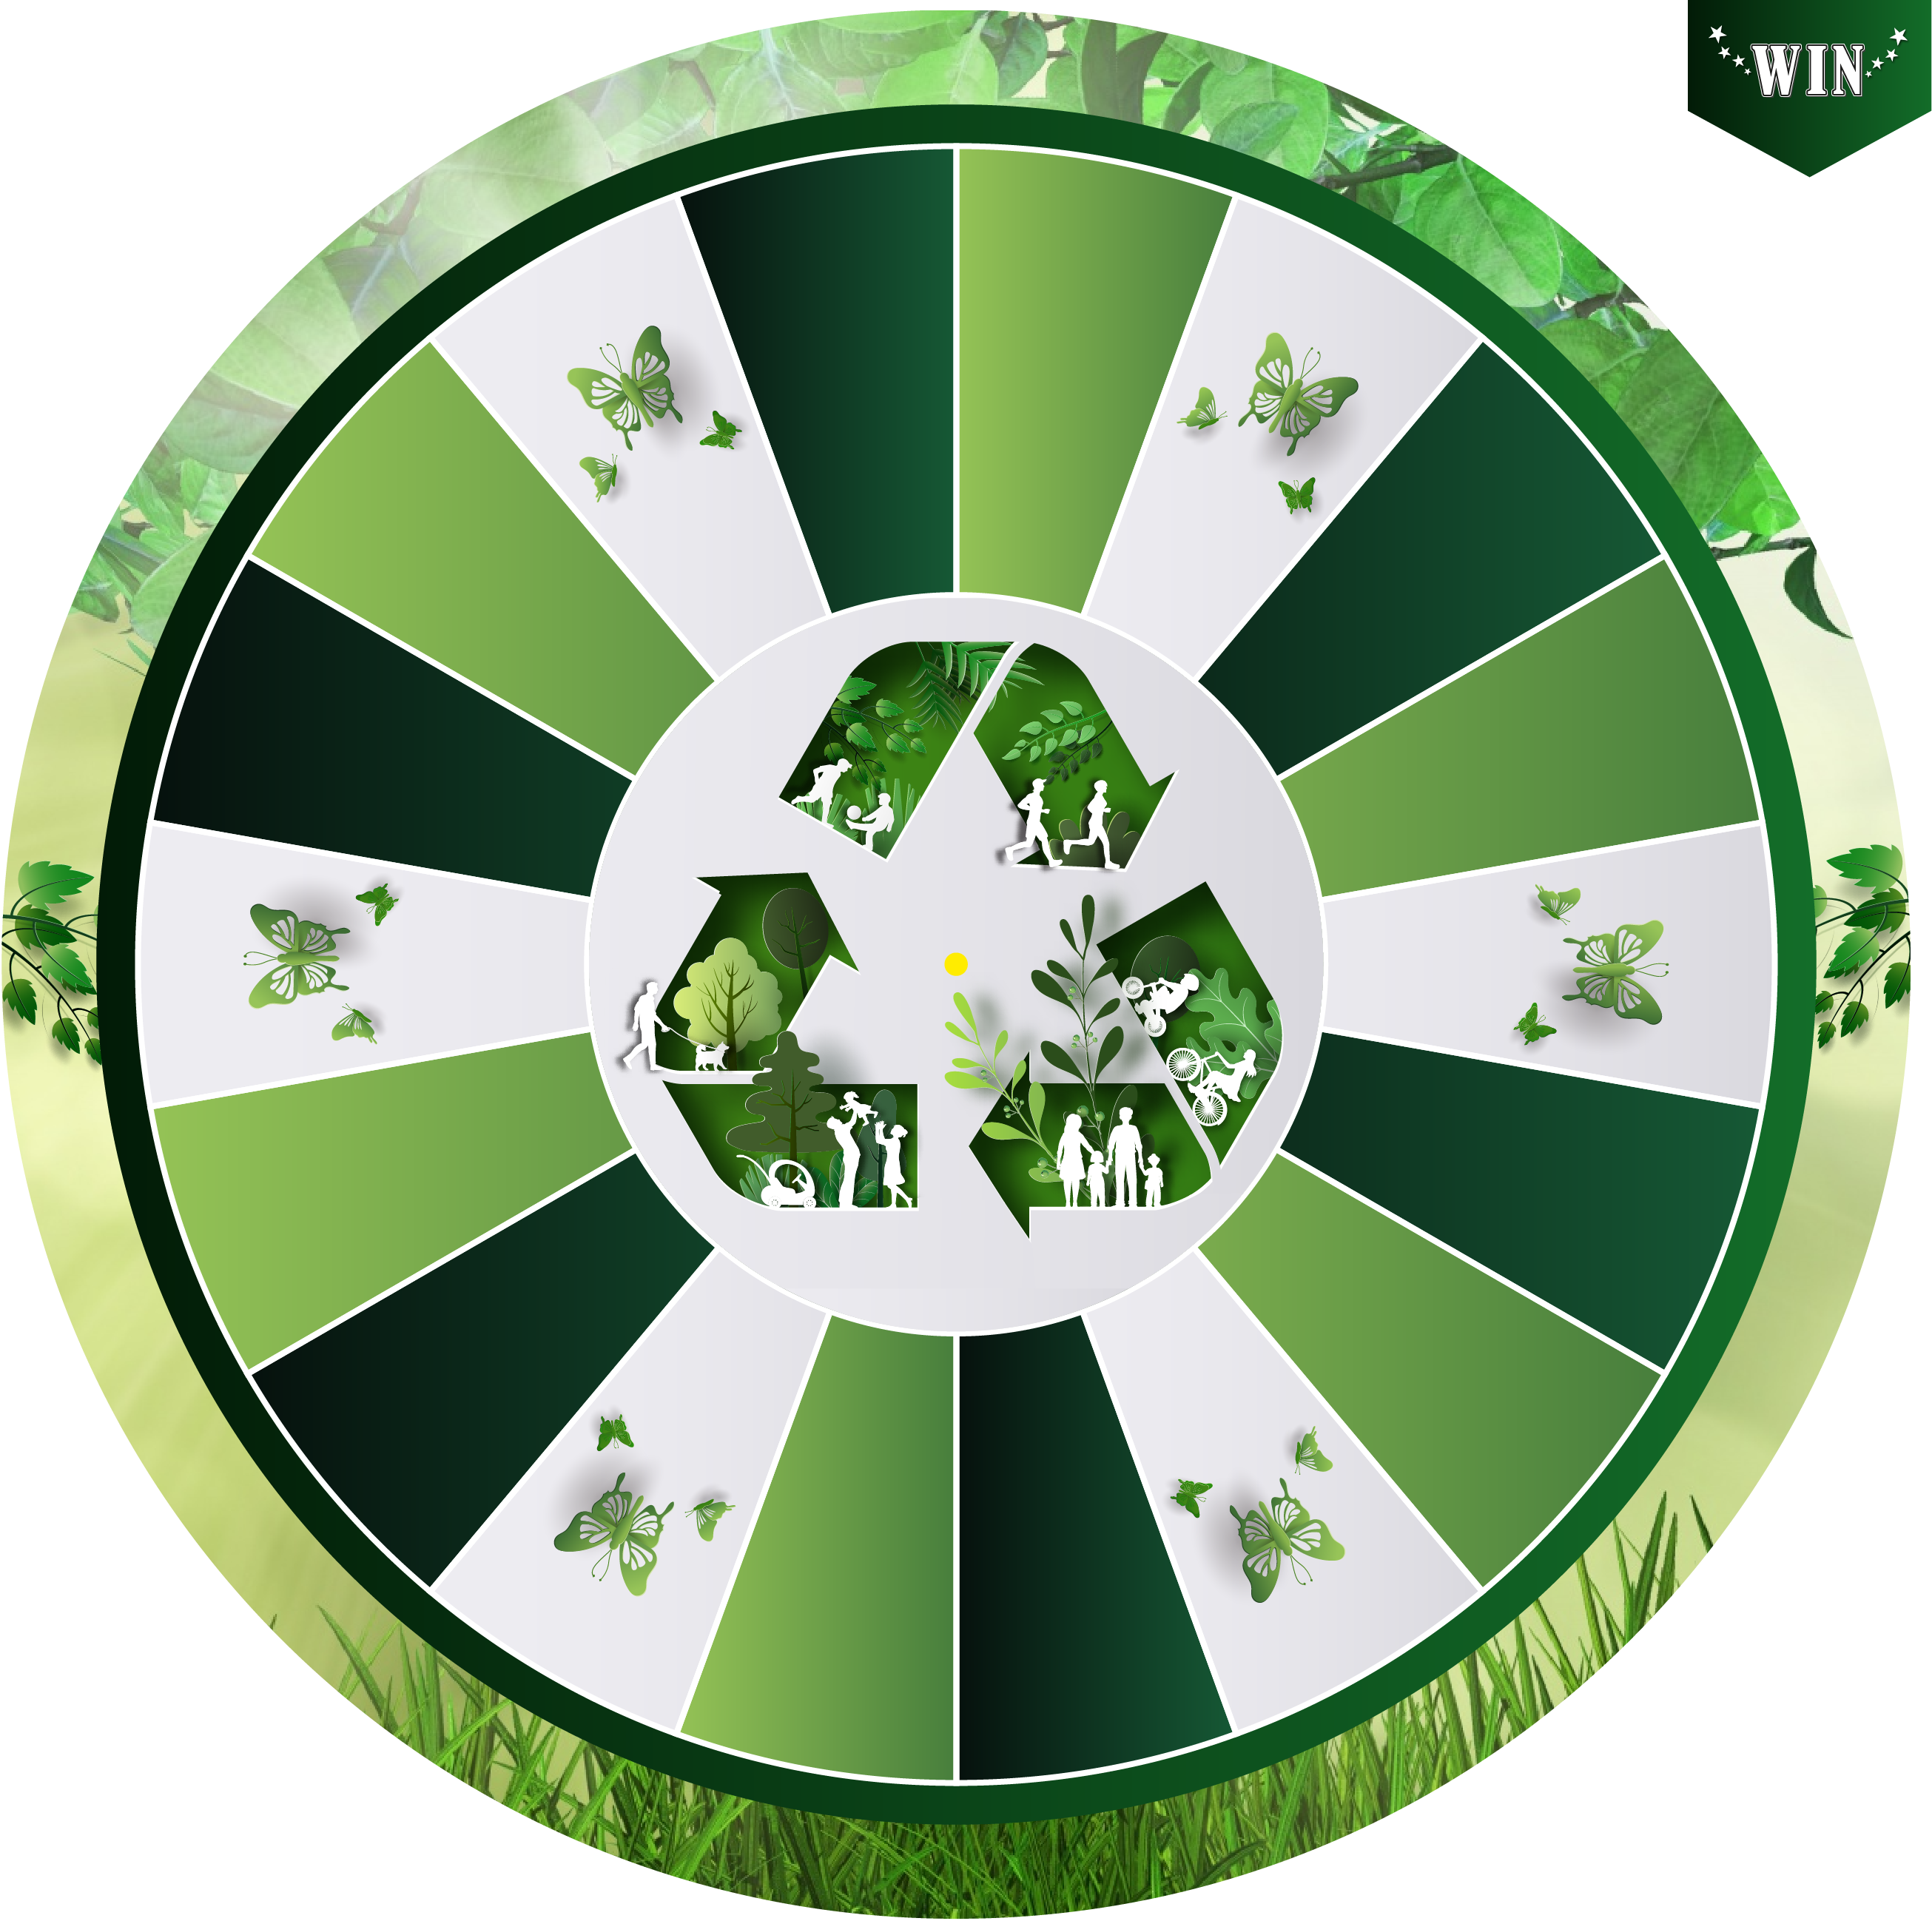 radvanfortuinshop.nl| Koop een rad van fortuin met een standaard design "Duurzaam Event groen- 18 vakken"